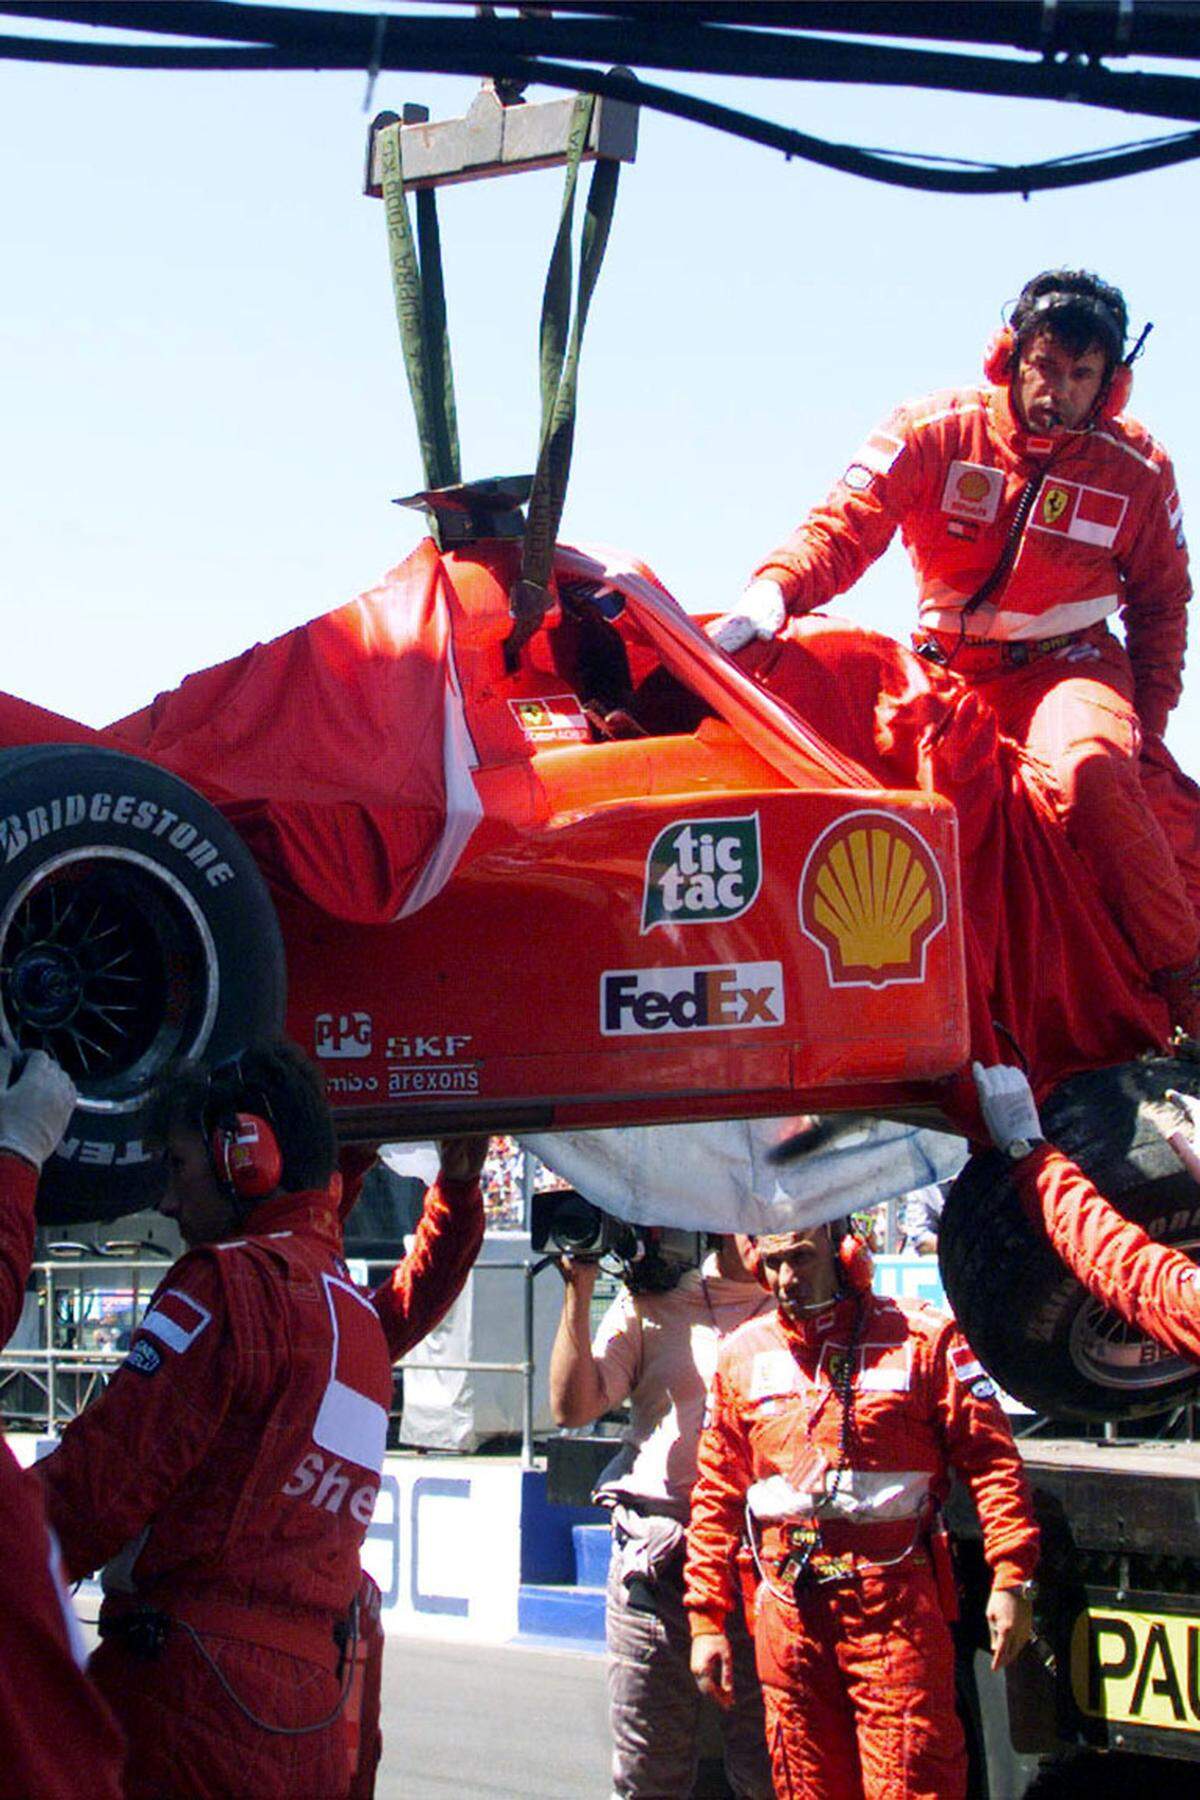 In Silverstone rast Schumacher wegen eines Bremsdefekts in einen Reifenstapel und bricht sich das rechte Schien- und Wadenbein. Es bleibt sein bisher einziger schwerer Unfall.